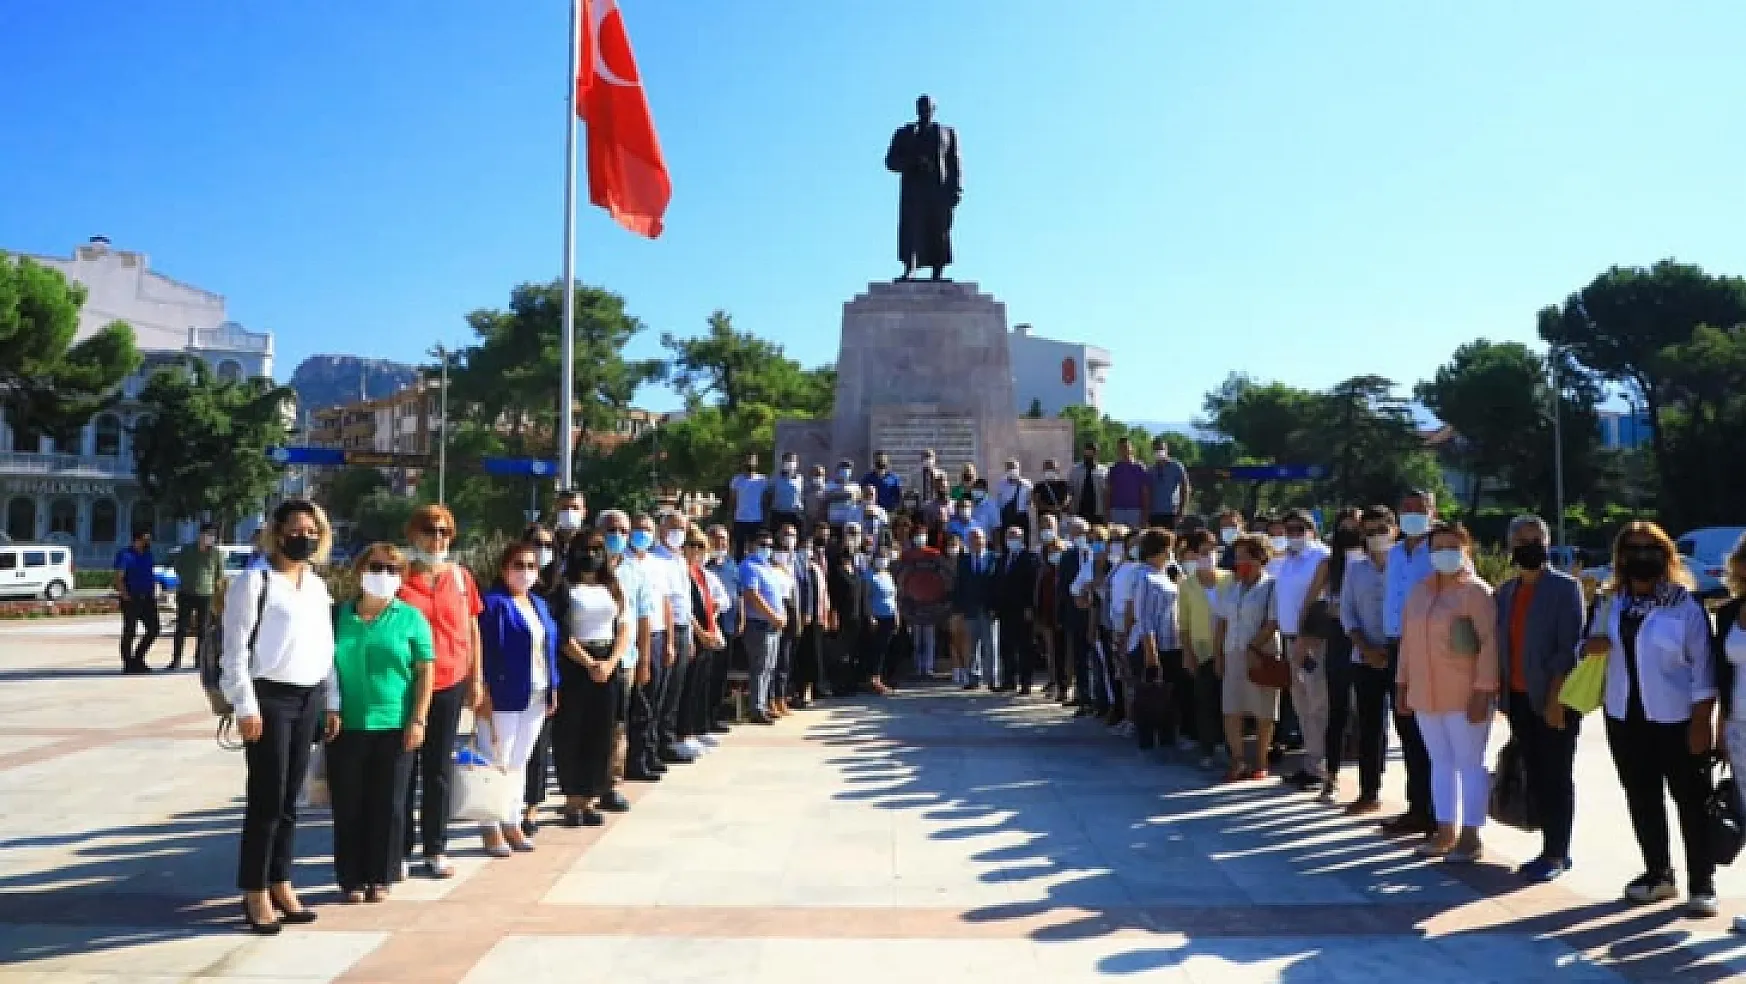 CHP İl Başkanı Adem Zeybekoğlu 'CHP dilekçe verilerek başvuru yapılıp kurulan bir parti değil'